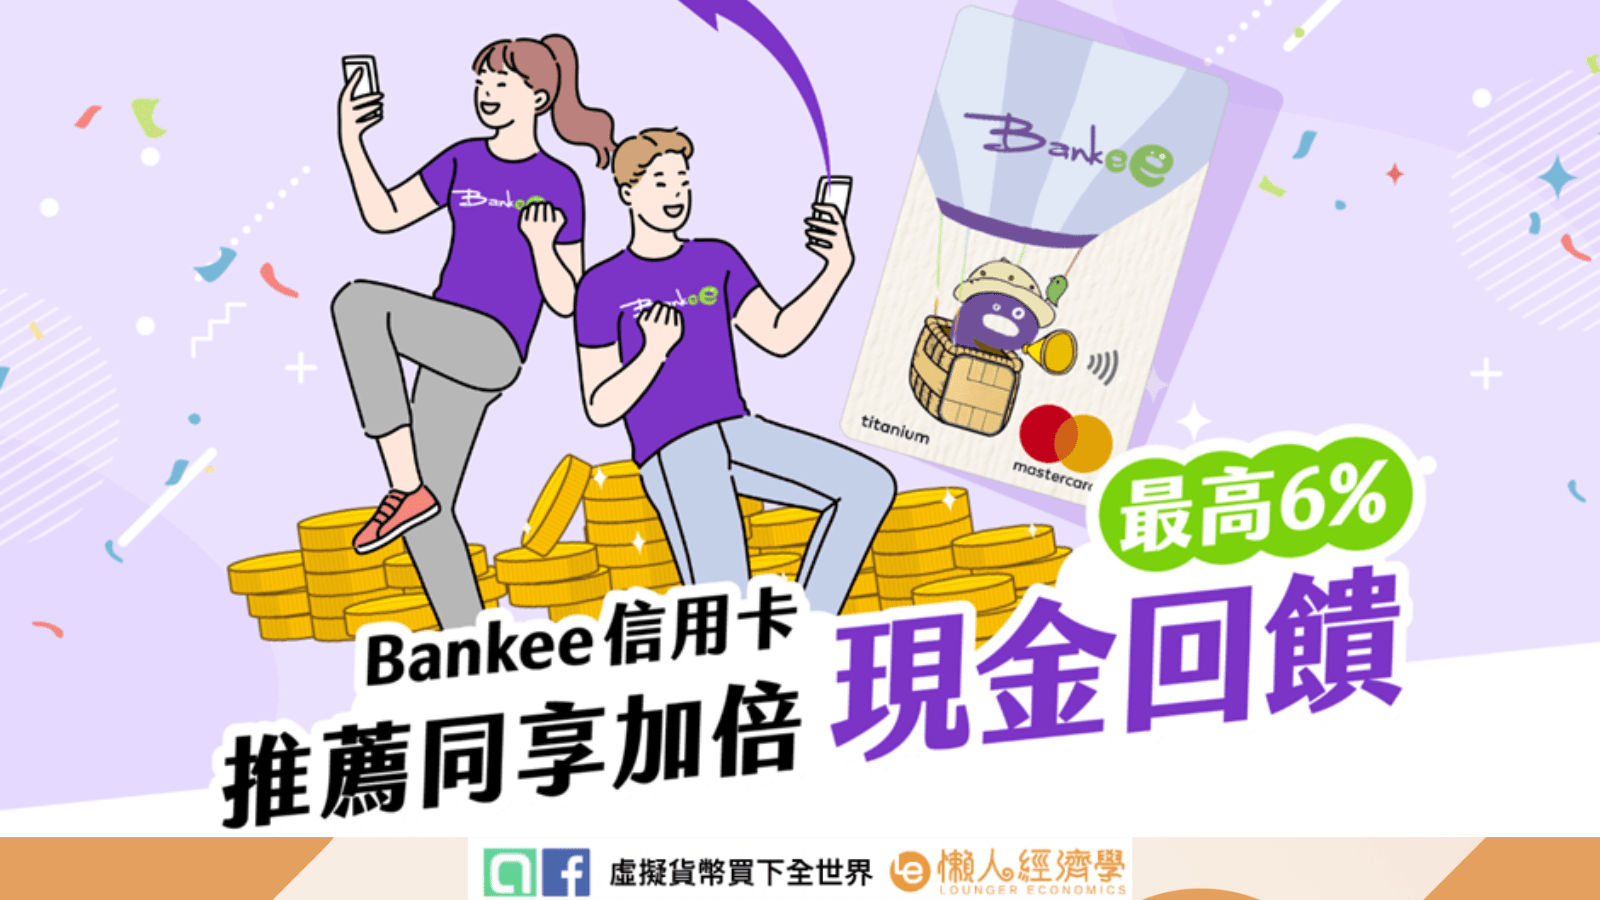 除了開戶 Bankee 數位帳戶 以外，搭配帳戶還可申辦刷卡最高享國內 2.4%、海外 6% 回饋的 Bankee 信用卡。